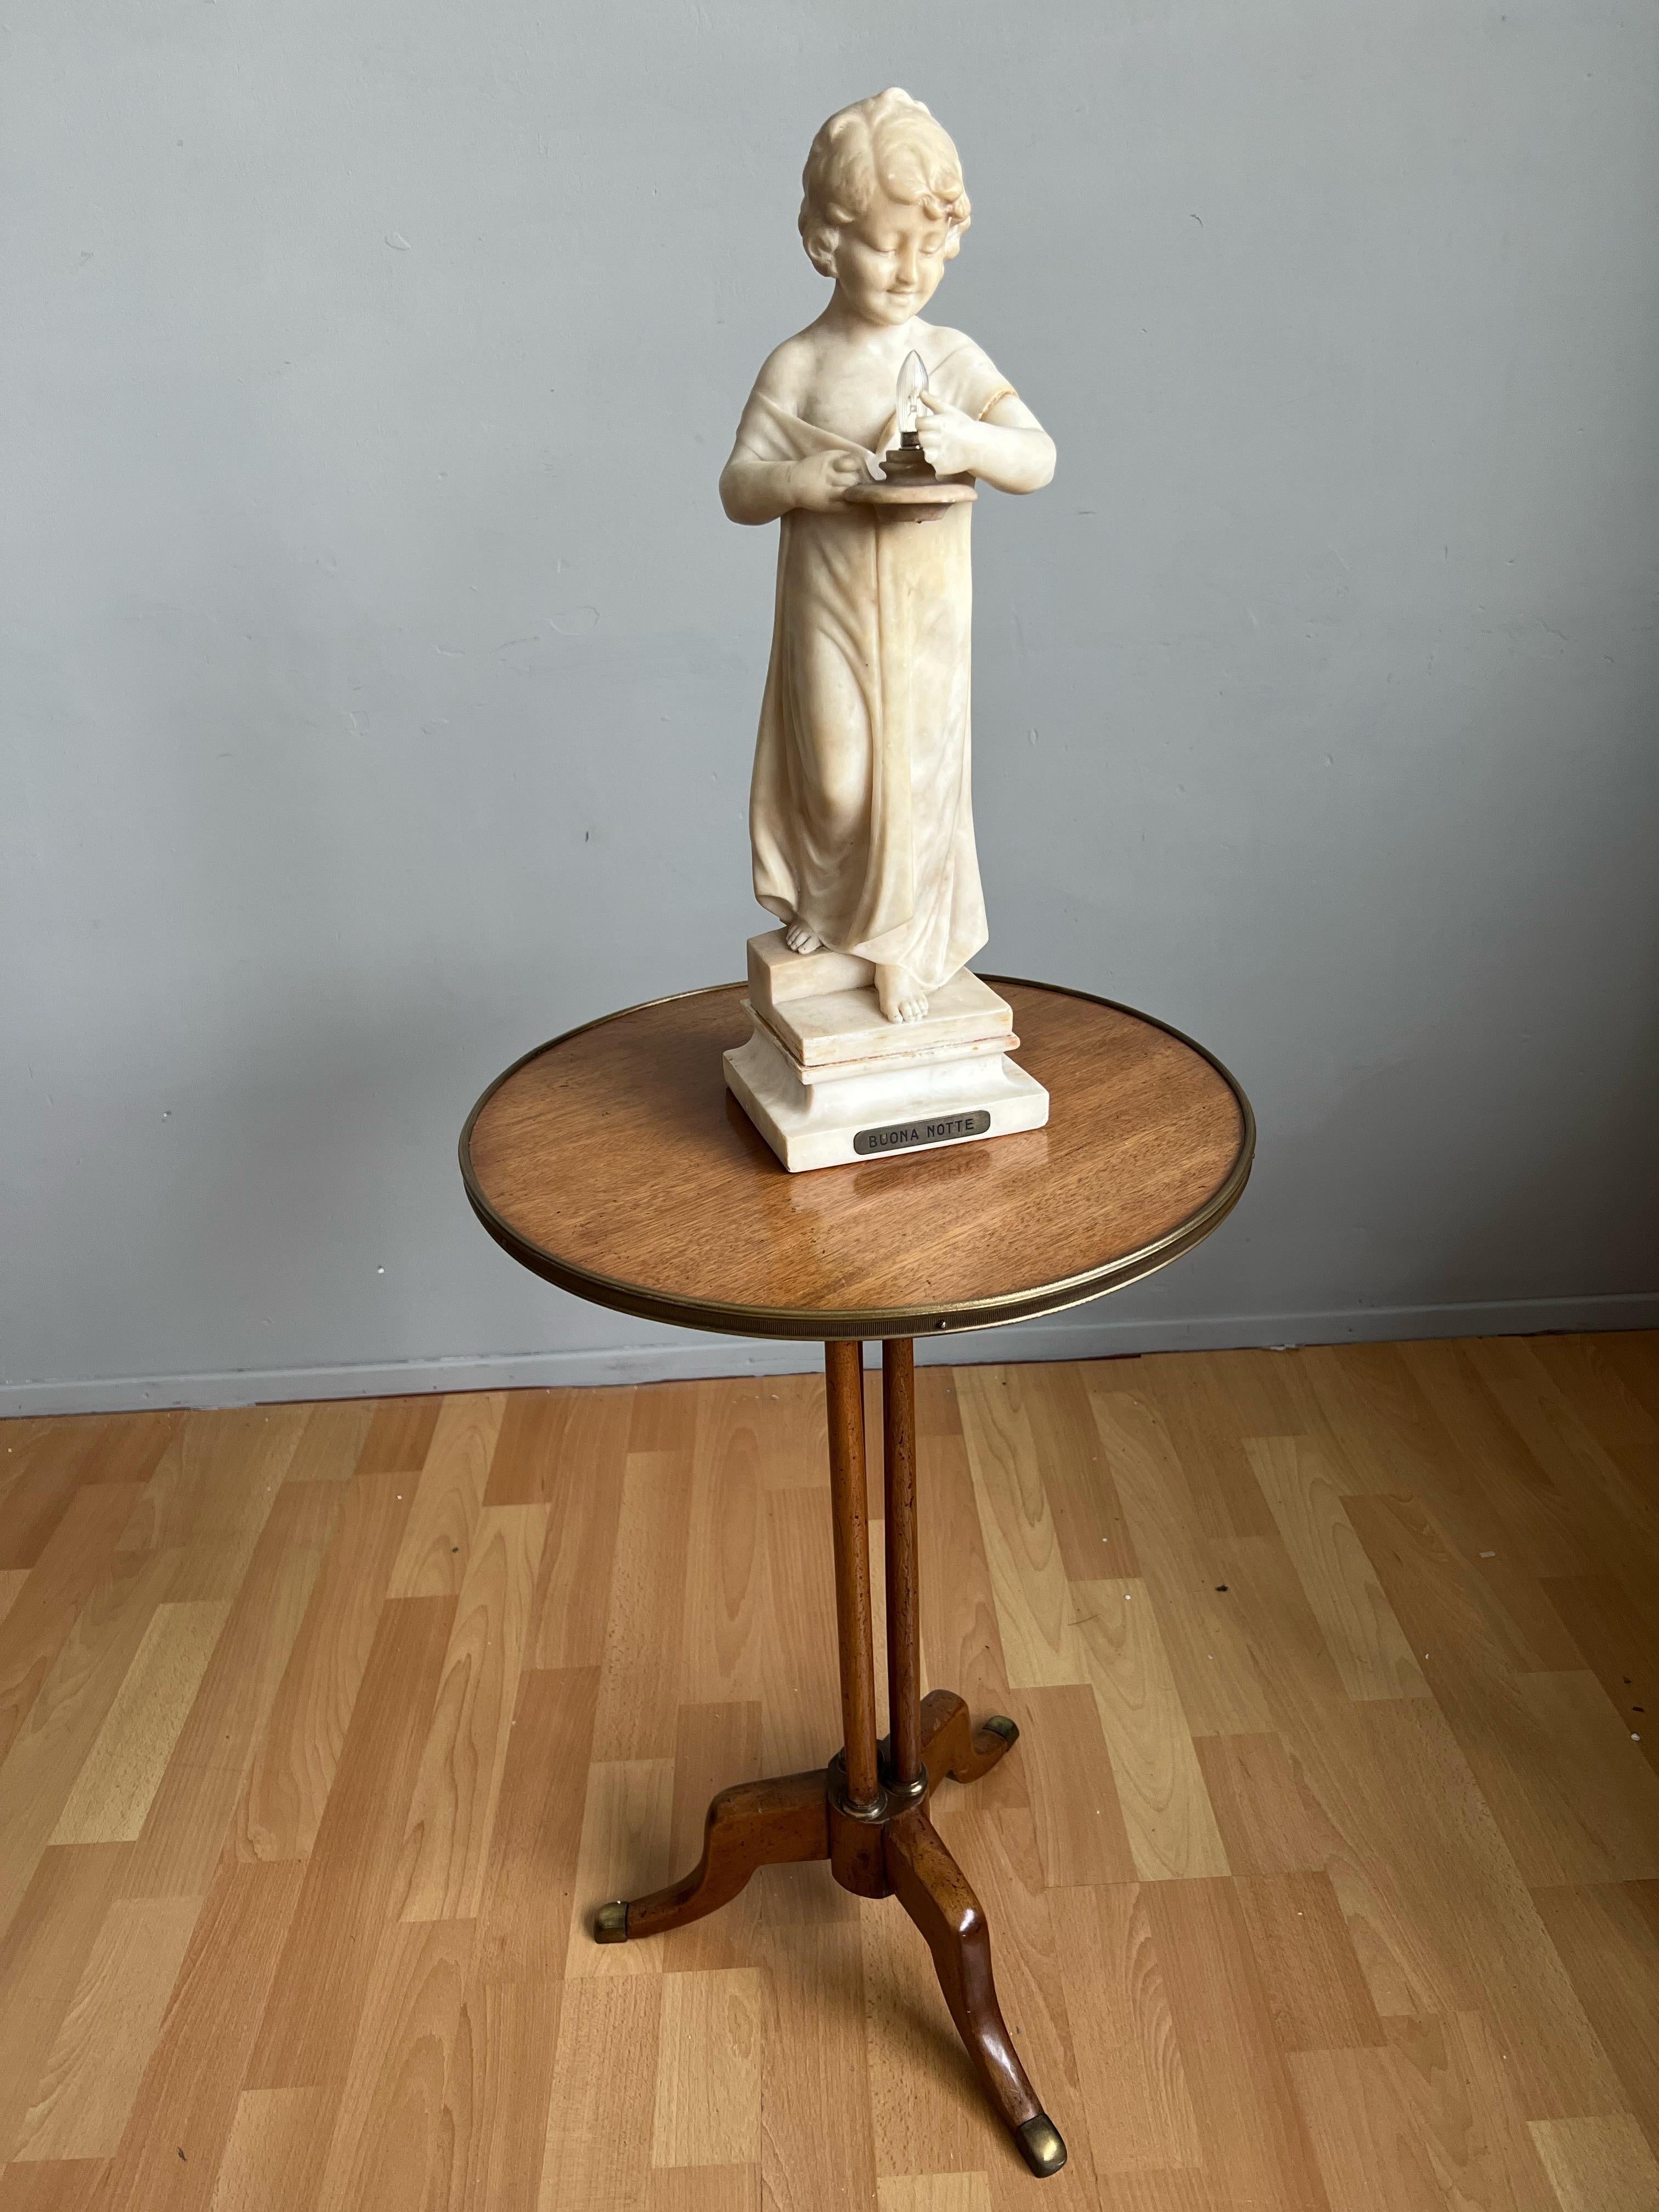 Bezaubernde antike Skulptur eines Mädchens auf der Treppe, das ein Licht hält, von Umberto Stiaccini, Florenz um 1910.

Diese schöne und wahrhaft elegante, skulpturale Tisch- oder Schreibtischlampe ist ein weiterer unserer großartigen Funde der